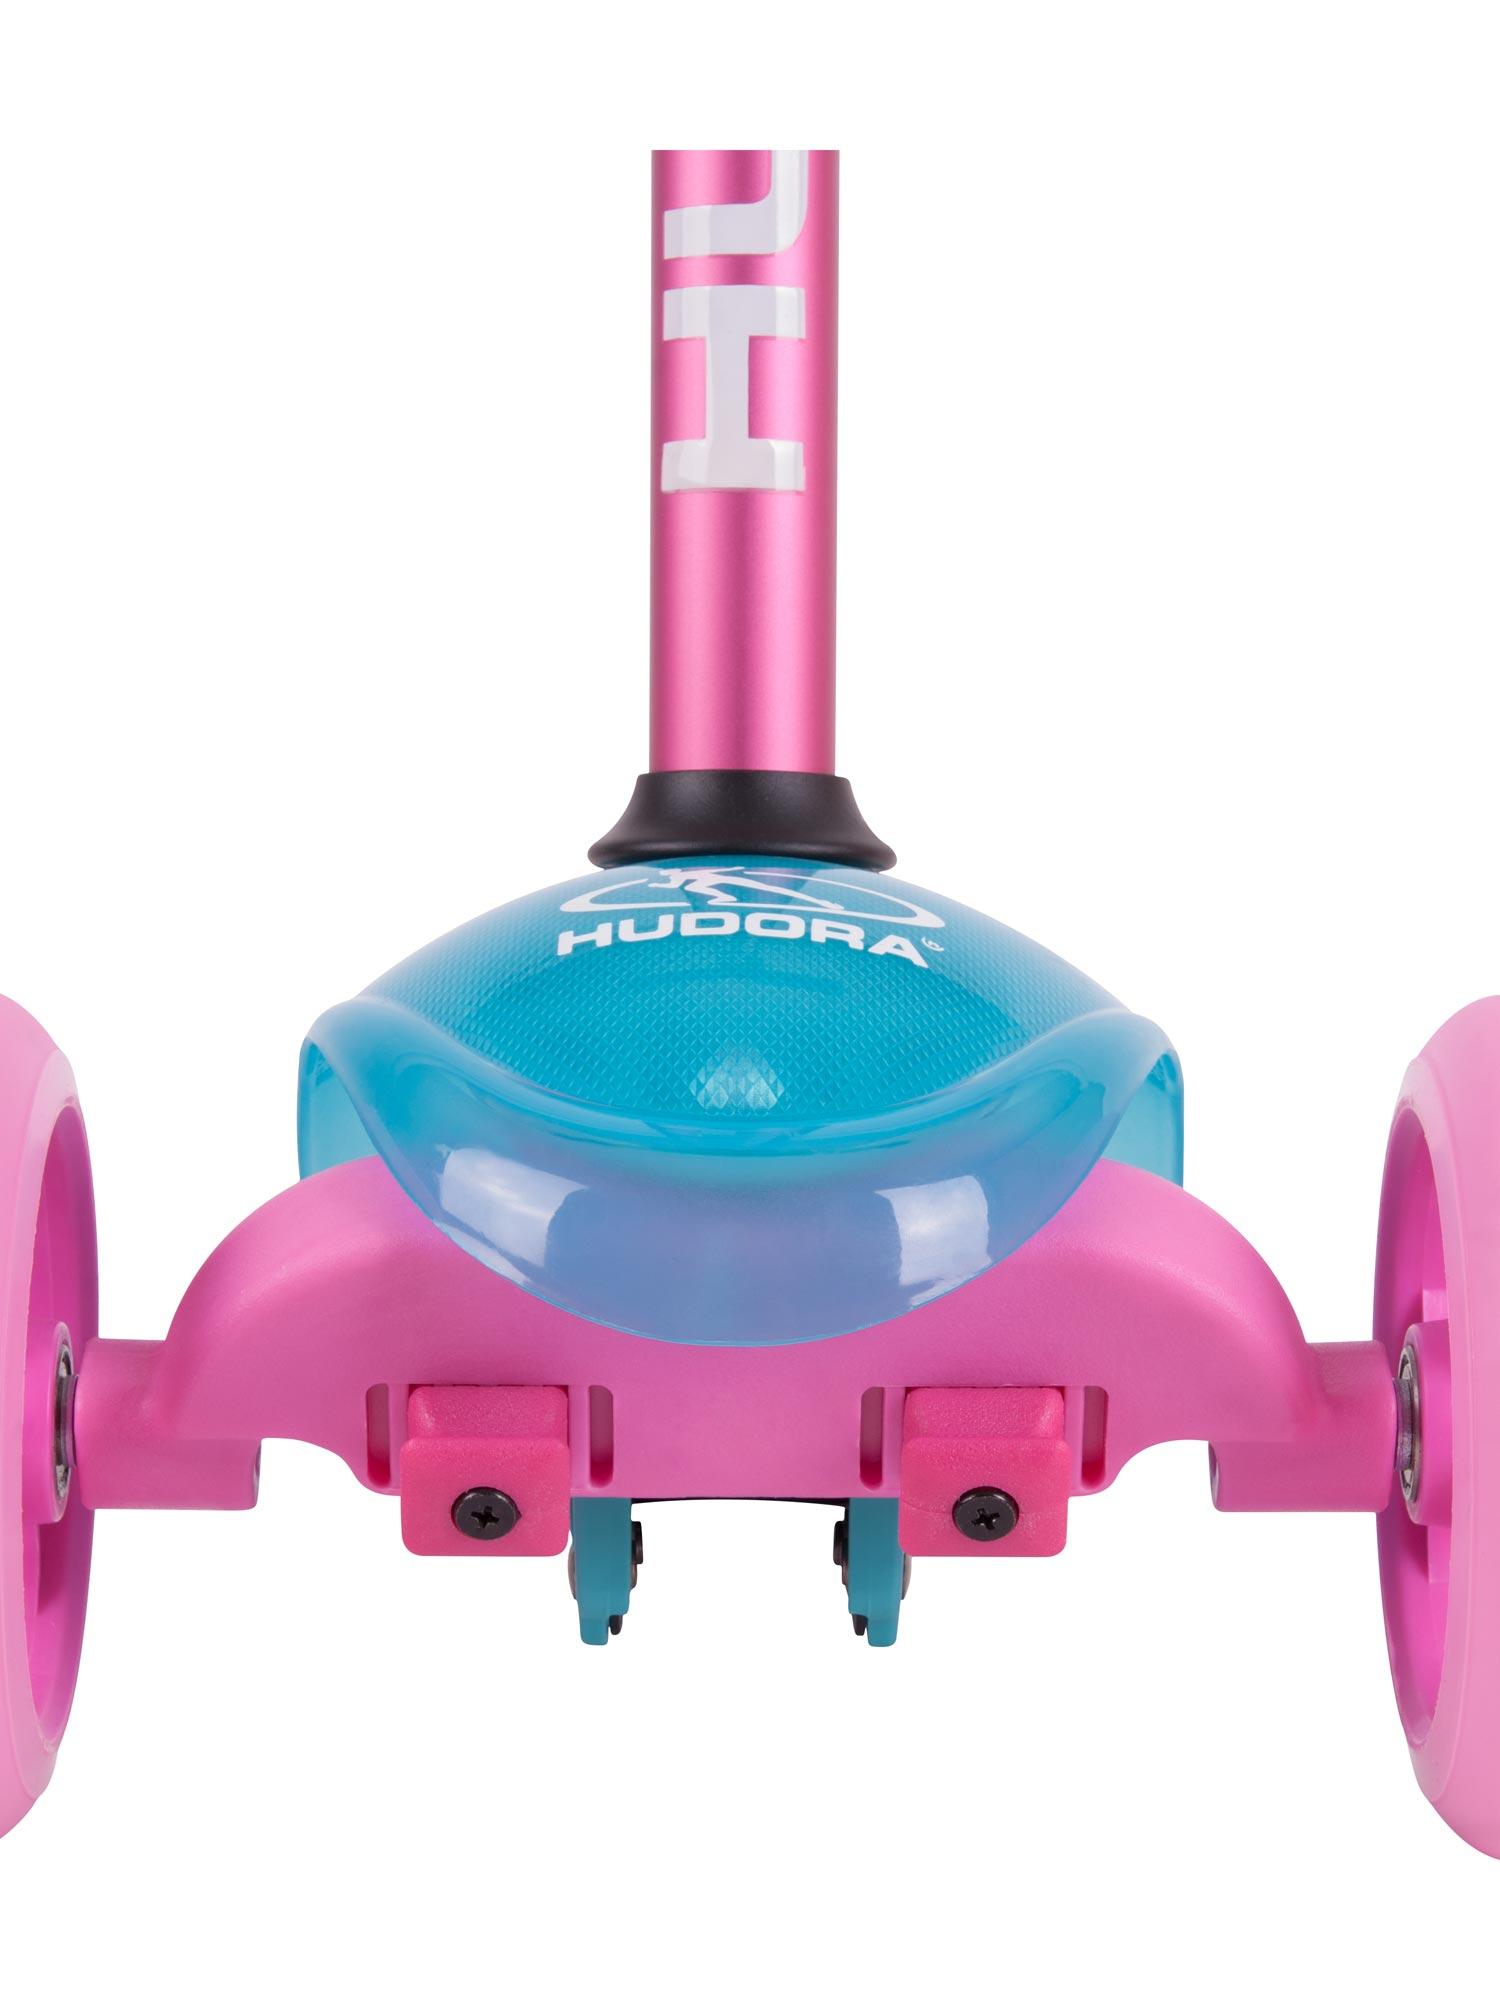 Selected image for HUDORA Trotinet za devojčice Flitzkids 2.0 plavo-roze